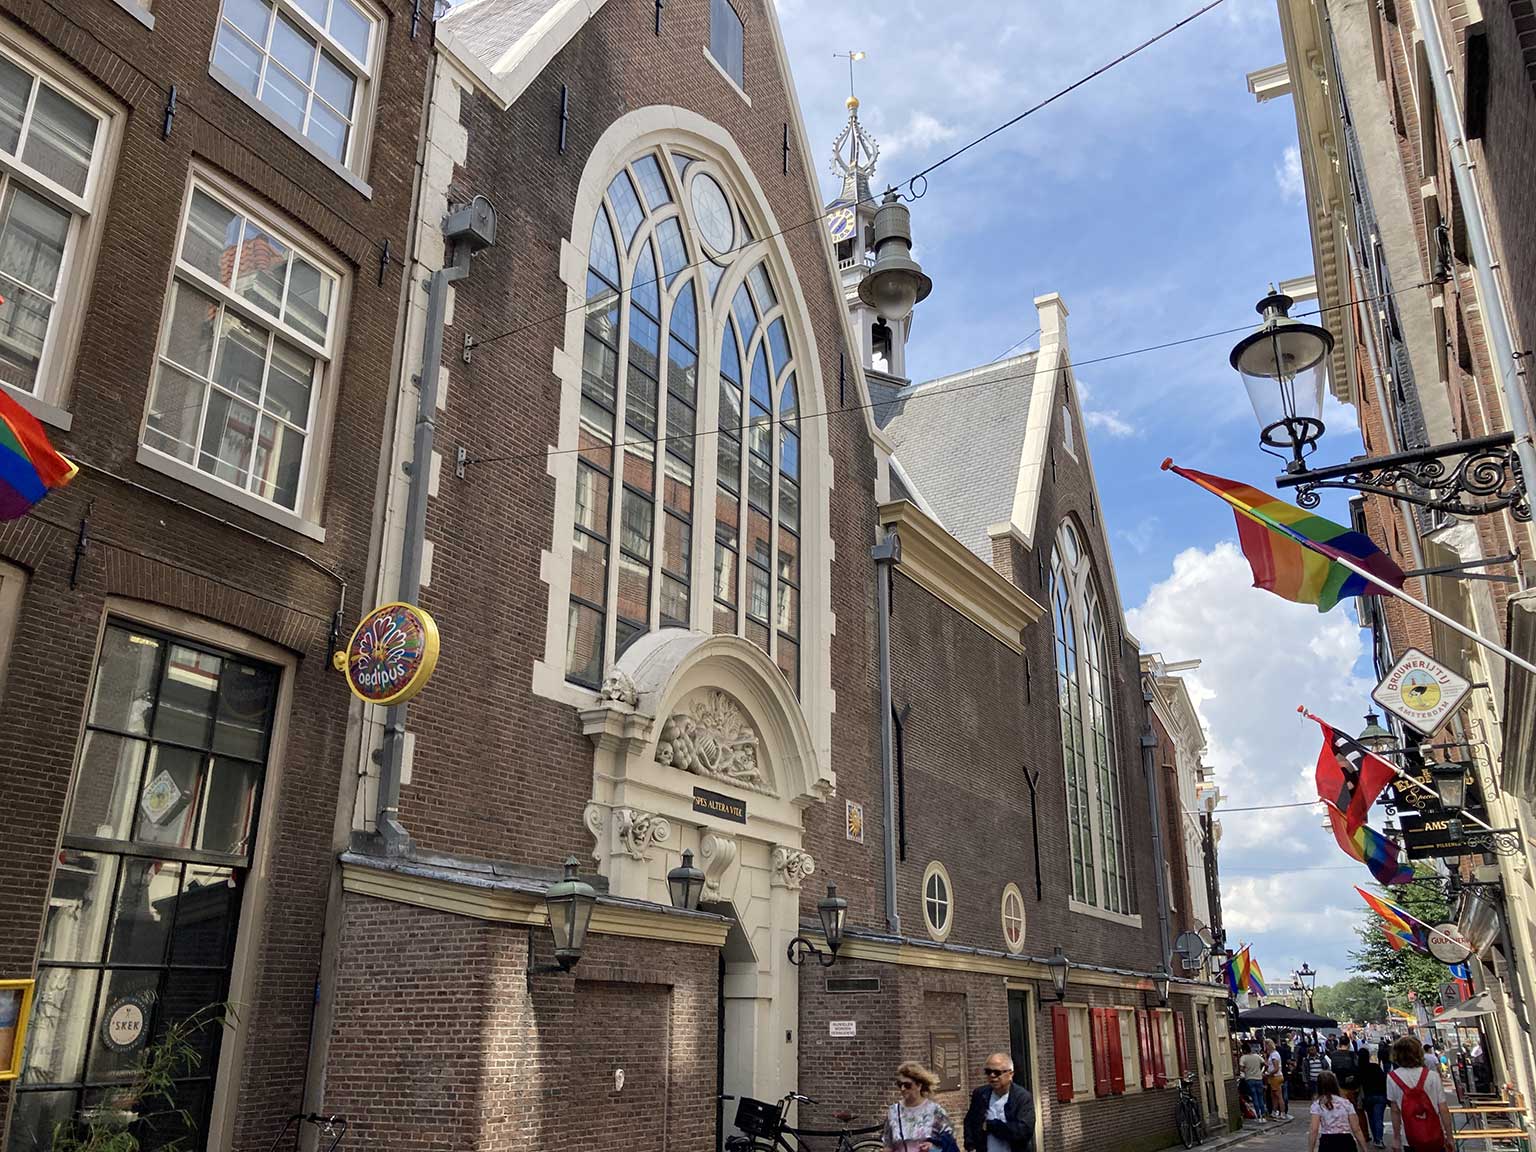 Sint Olofskapel on Zeedijk, Amsterdam